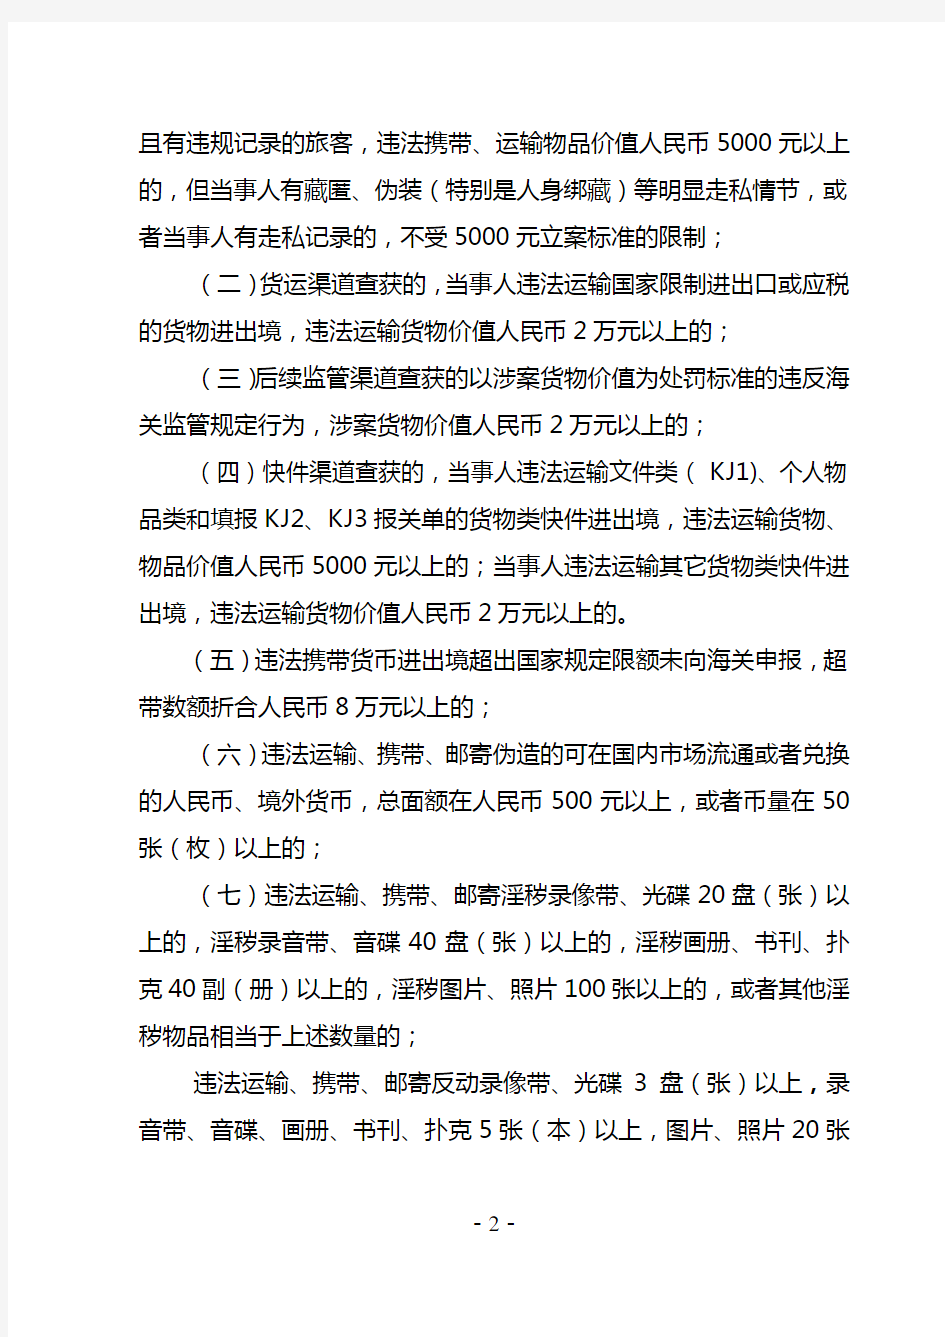 《海关标准》《深圳海关行政违法案件立案标准》